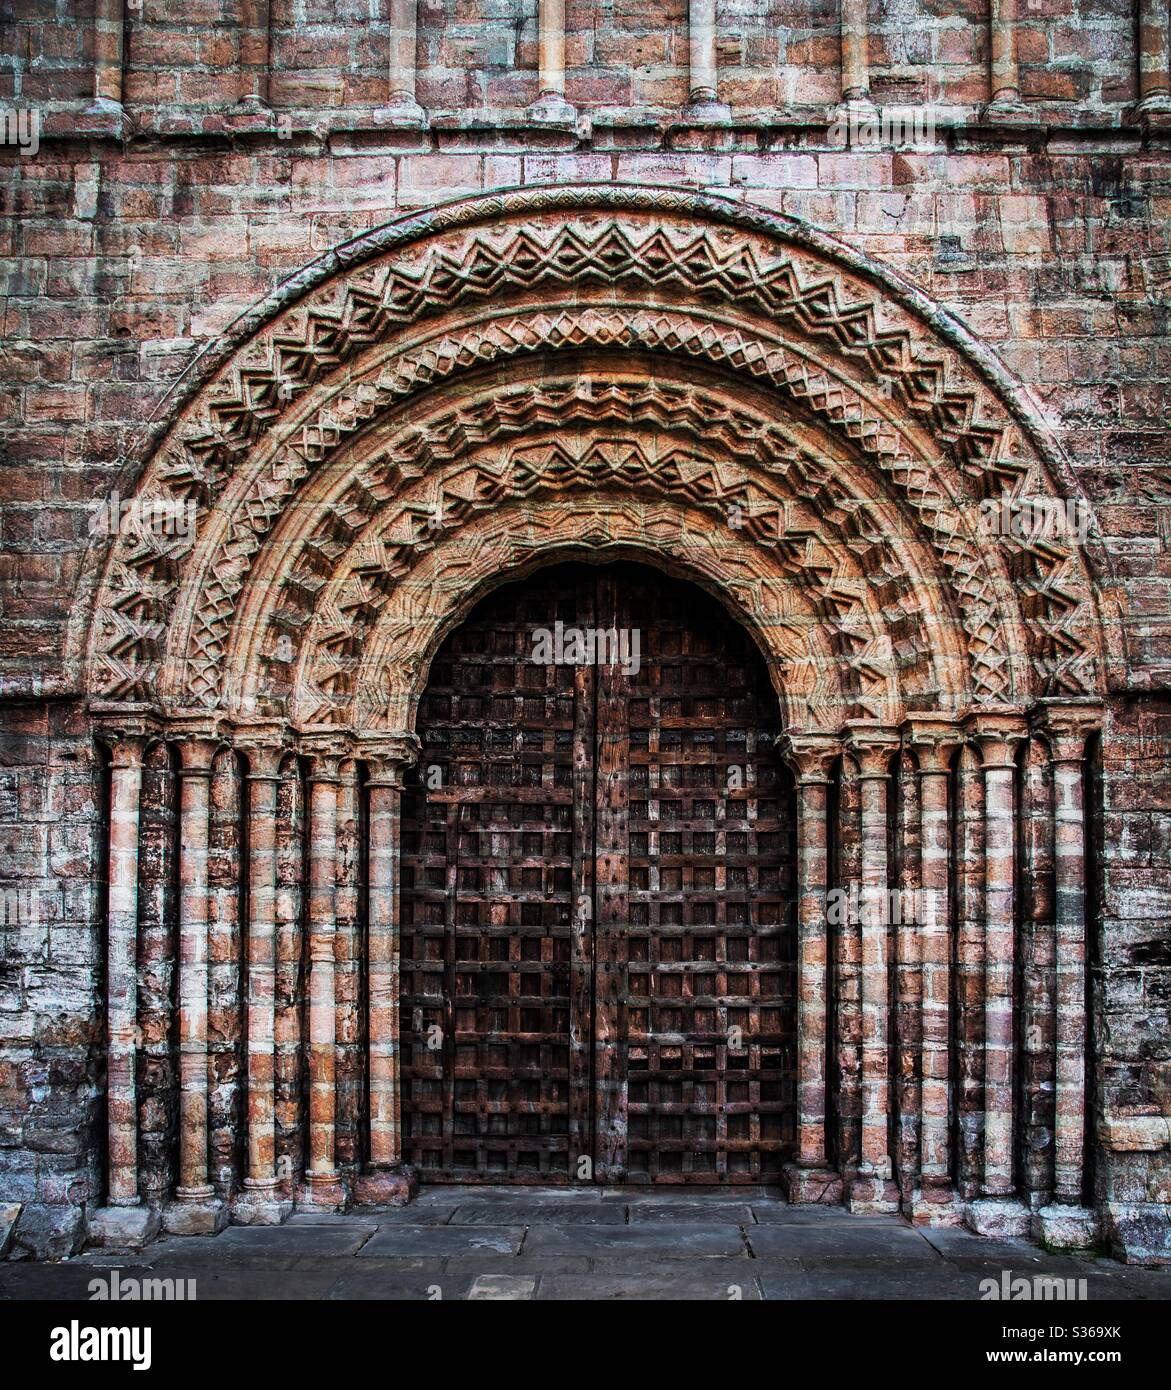 Une porte d'église gothique et ornée avec arches et piliers en pierre sculptés et complexes avec une porte en bois solide et lourde Banque D'Images